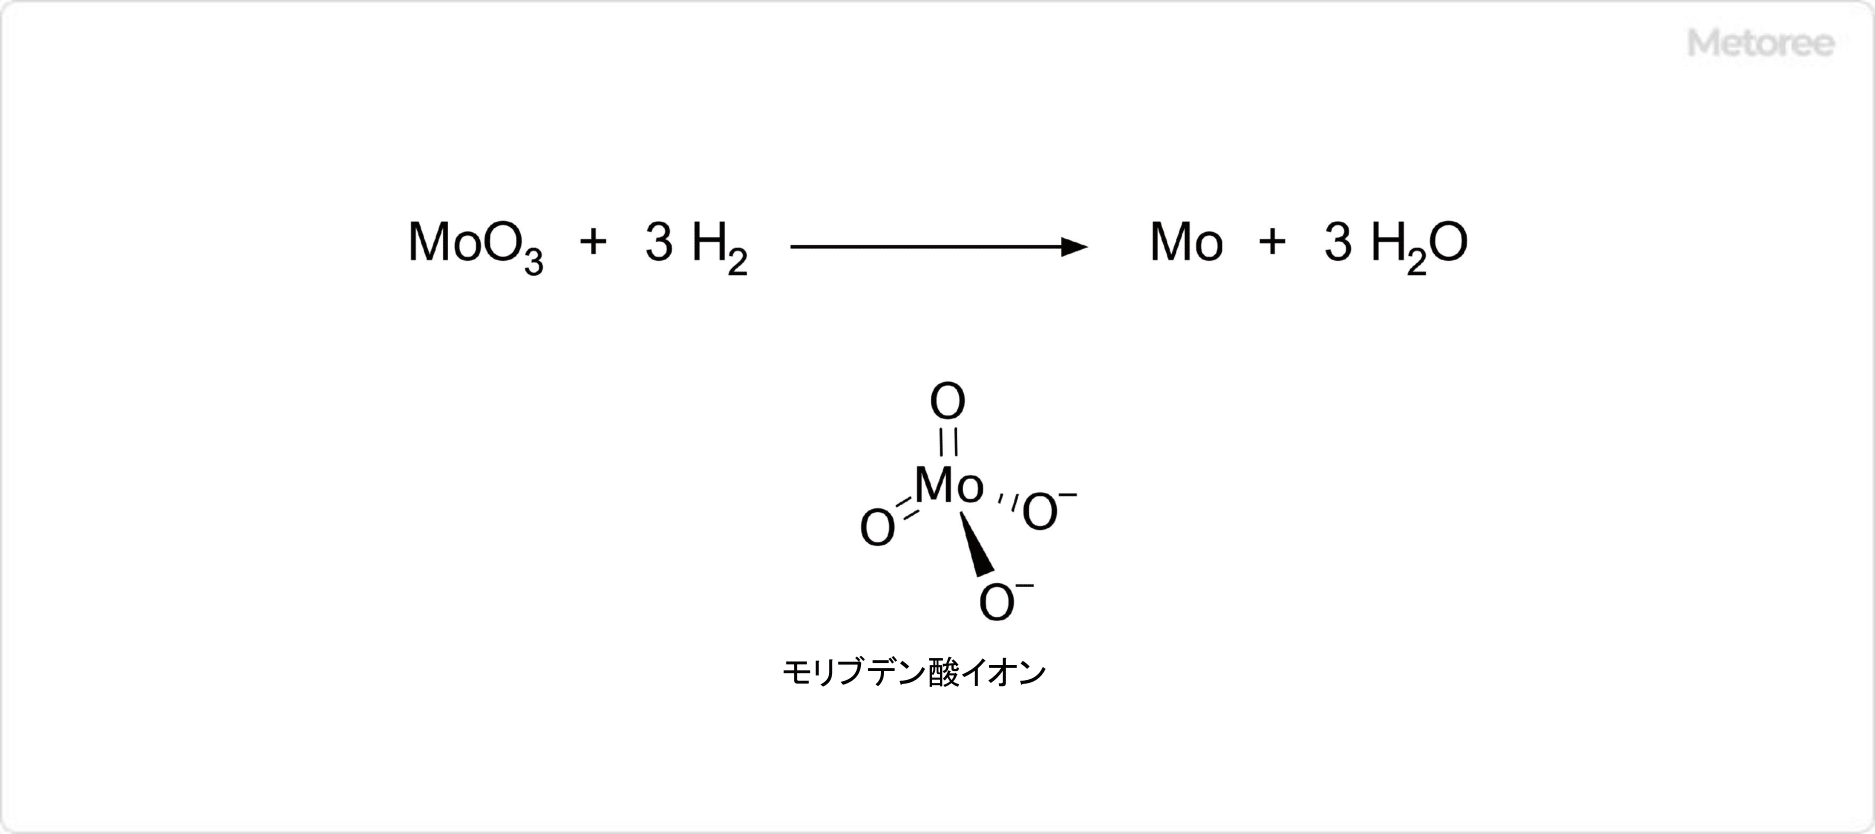 三酸化モリブデンと水素の反応とモリブデン酸イオンの構造